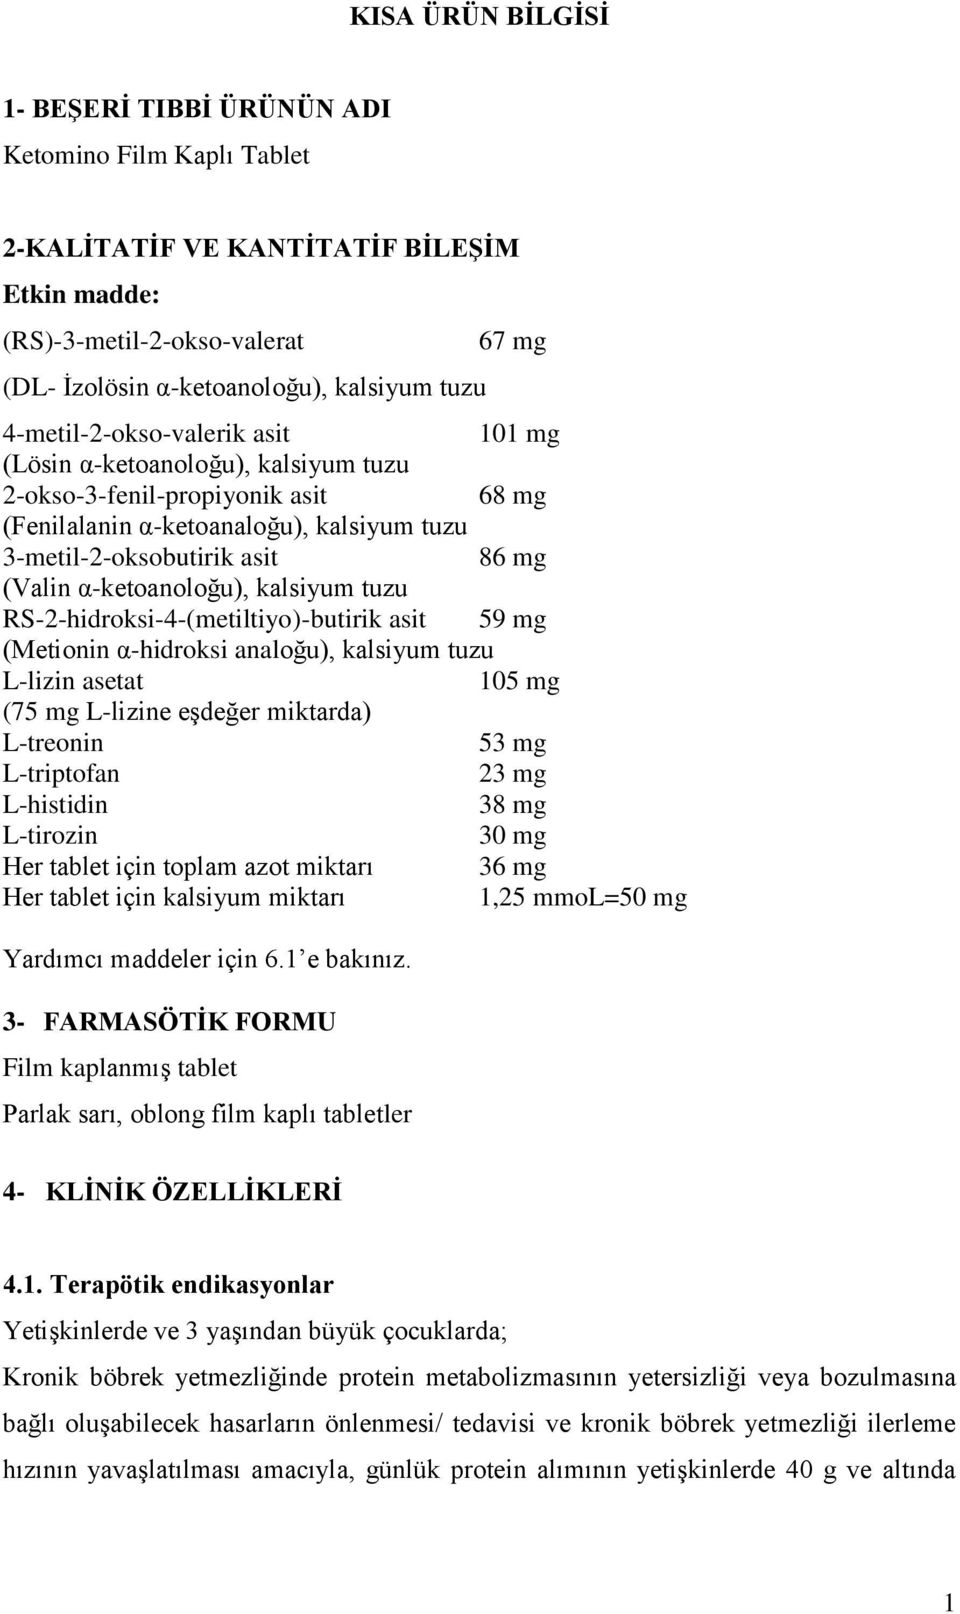 α-ketoanoloğu), kalsiyum tuzu RS-2-hidroksi-4-(metiltiyo)-butirik asit 59 mg (Metionin α-hidroksi analoğu), kalsiyum tuzu L-lizin asetat 105 mg (75 mg L-lizine eģdeğer miktarda) L-treonin 53 mg